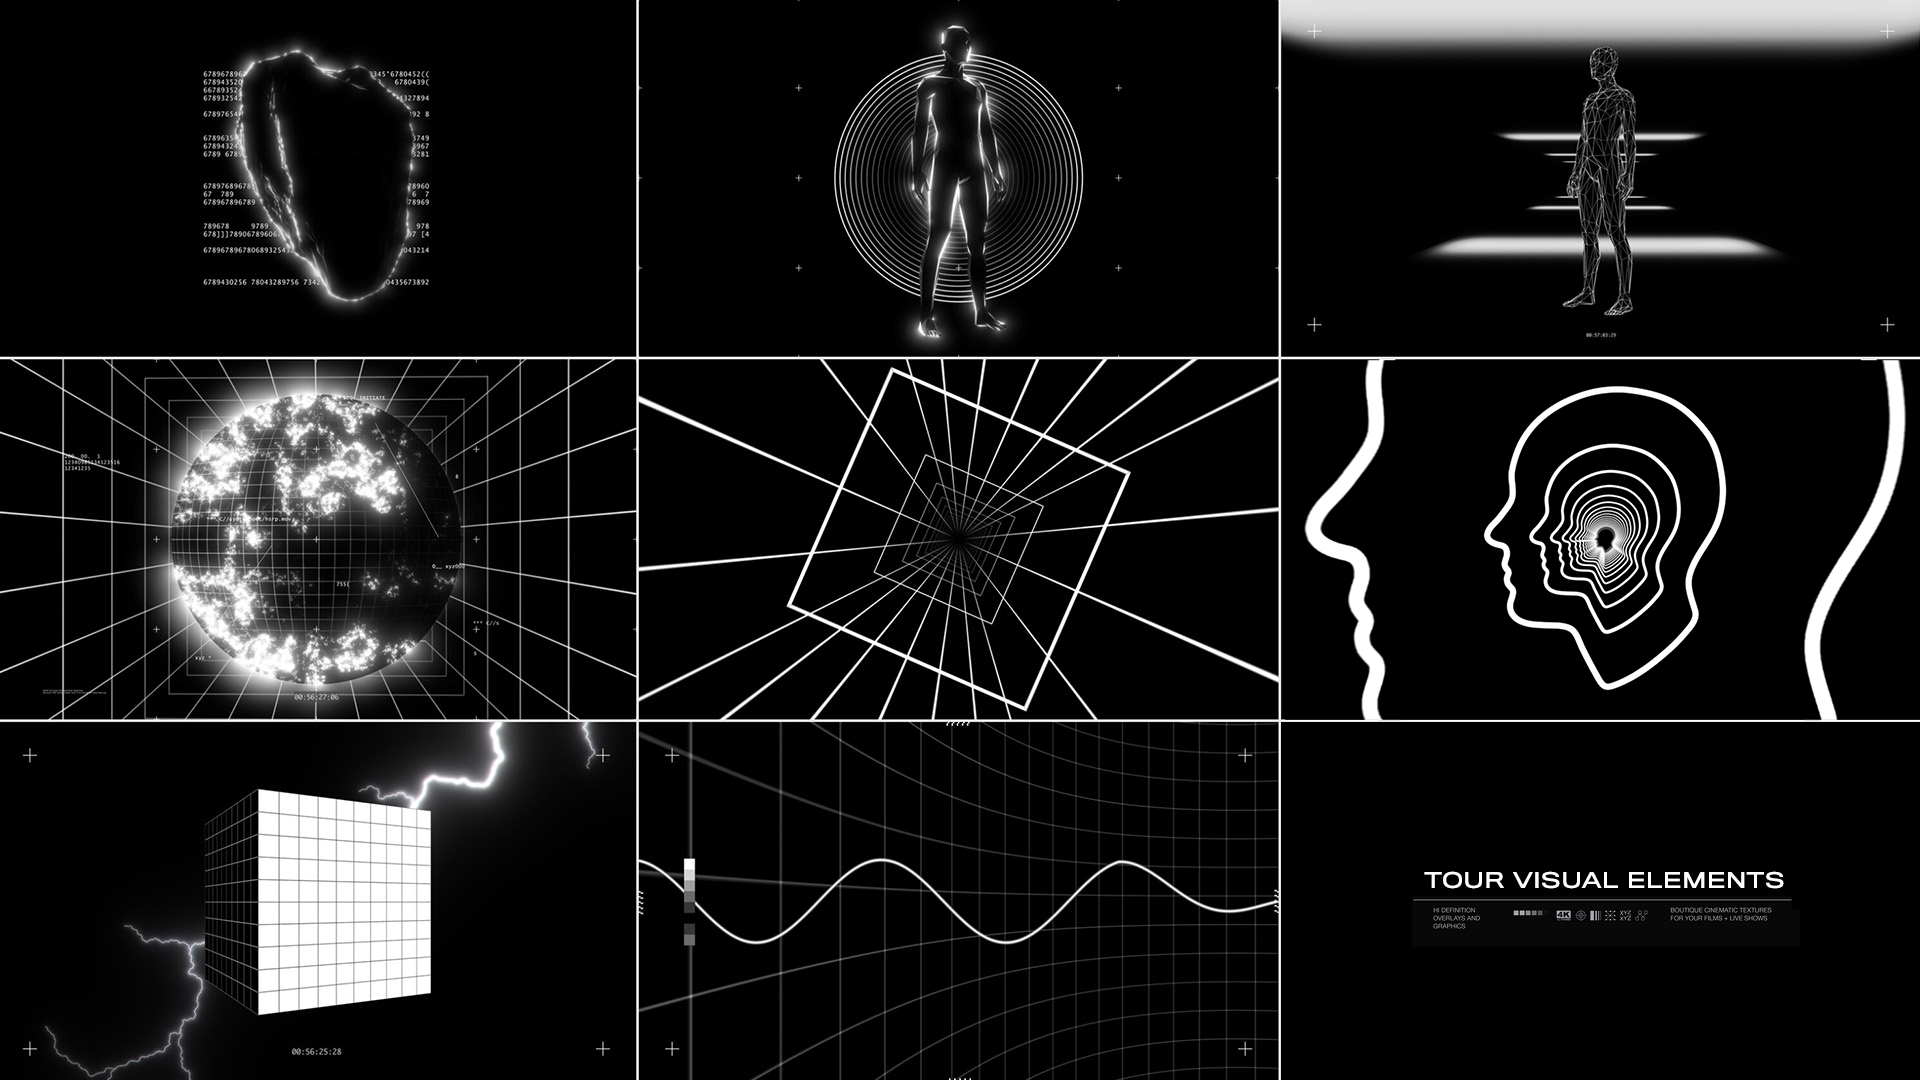 EZCO 200多个复古美学4K黑白科幻几何抽象灵感运动元素纹理循环电影音乐MV视频素材包 TOUR VISUAL ELEMENTS（6888）图层云2